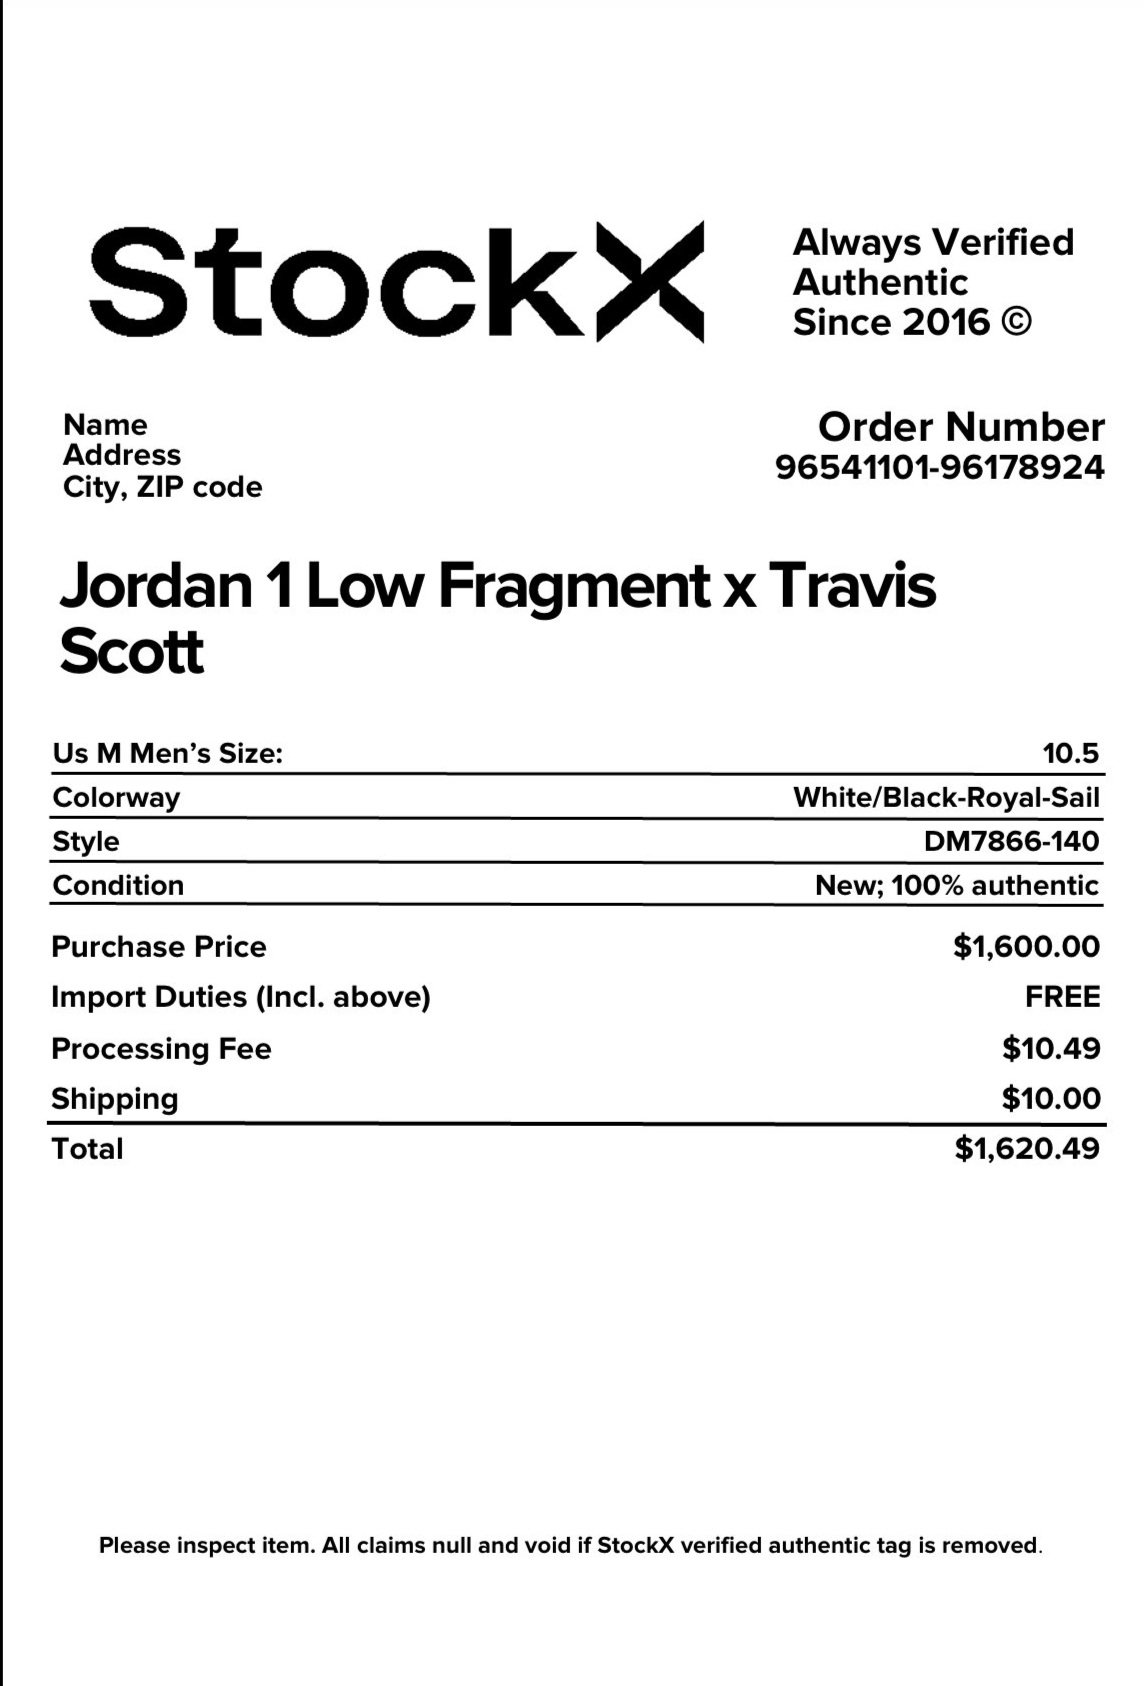 StockX receipt — RepReceipt